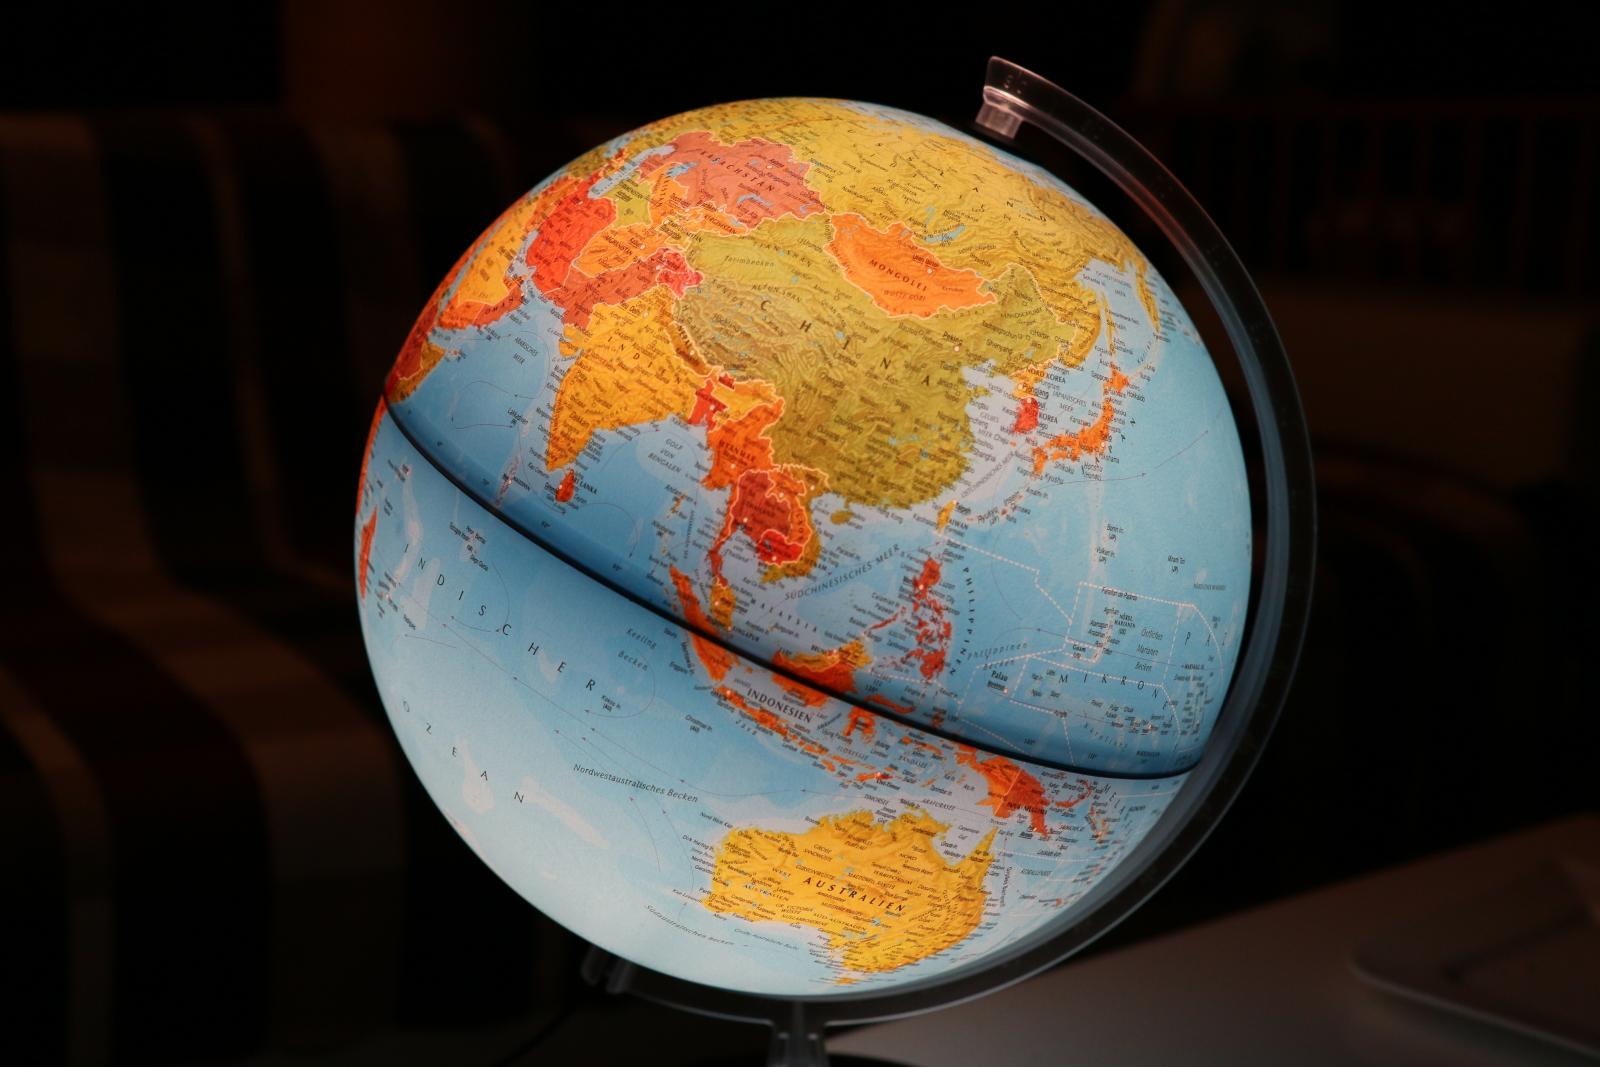 Illuminated globe. Photo credit: Pixabay